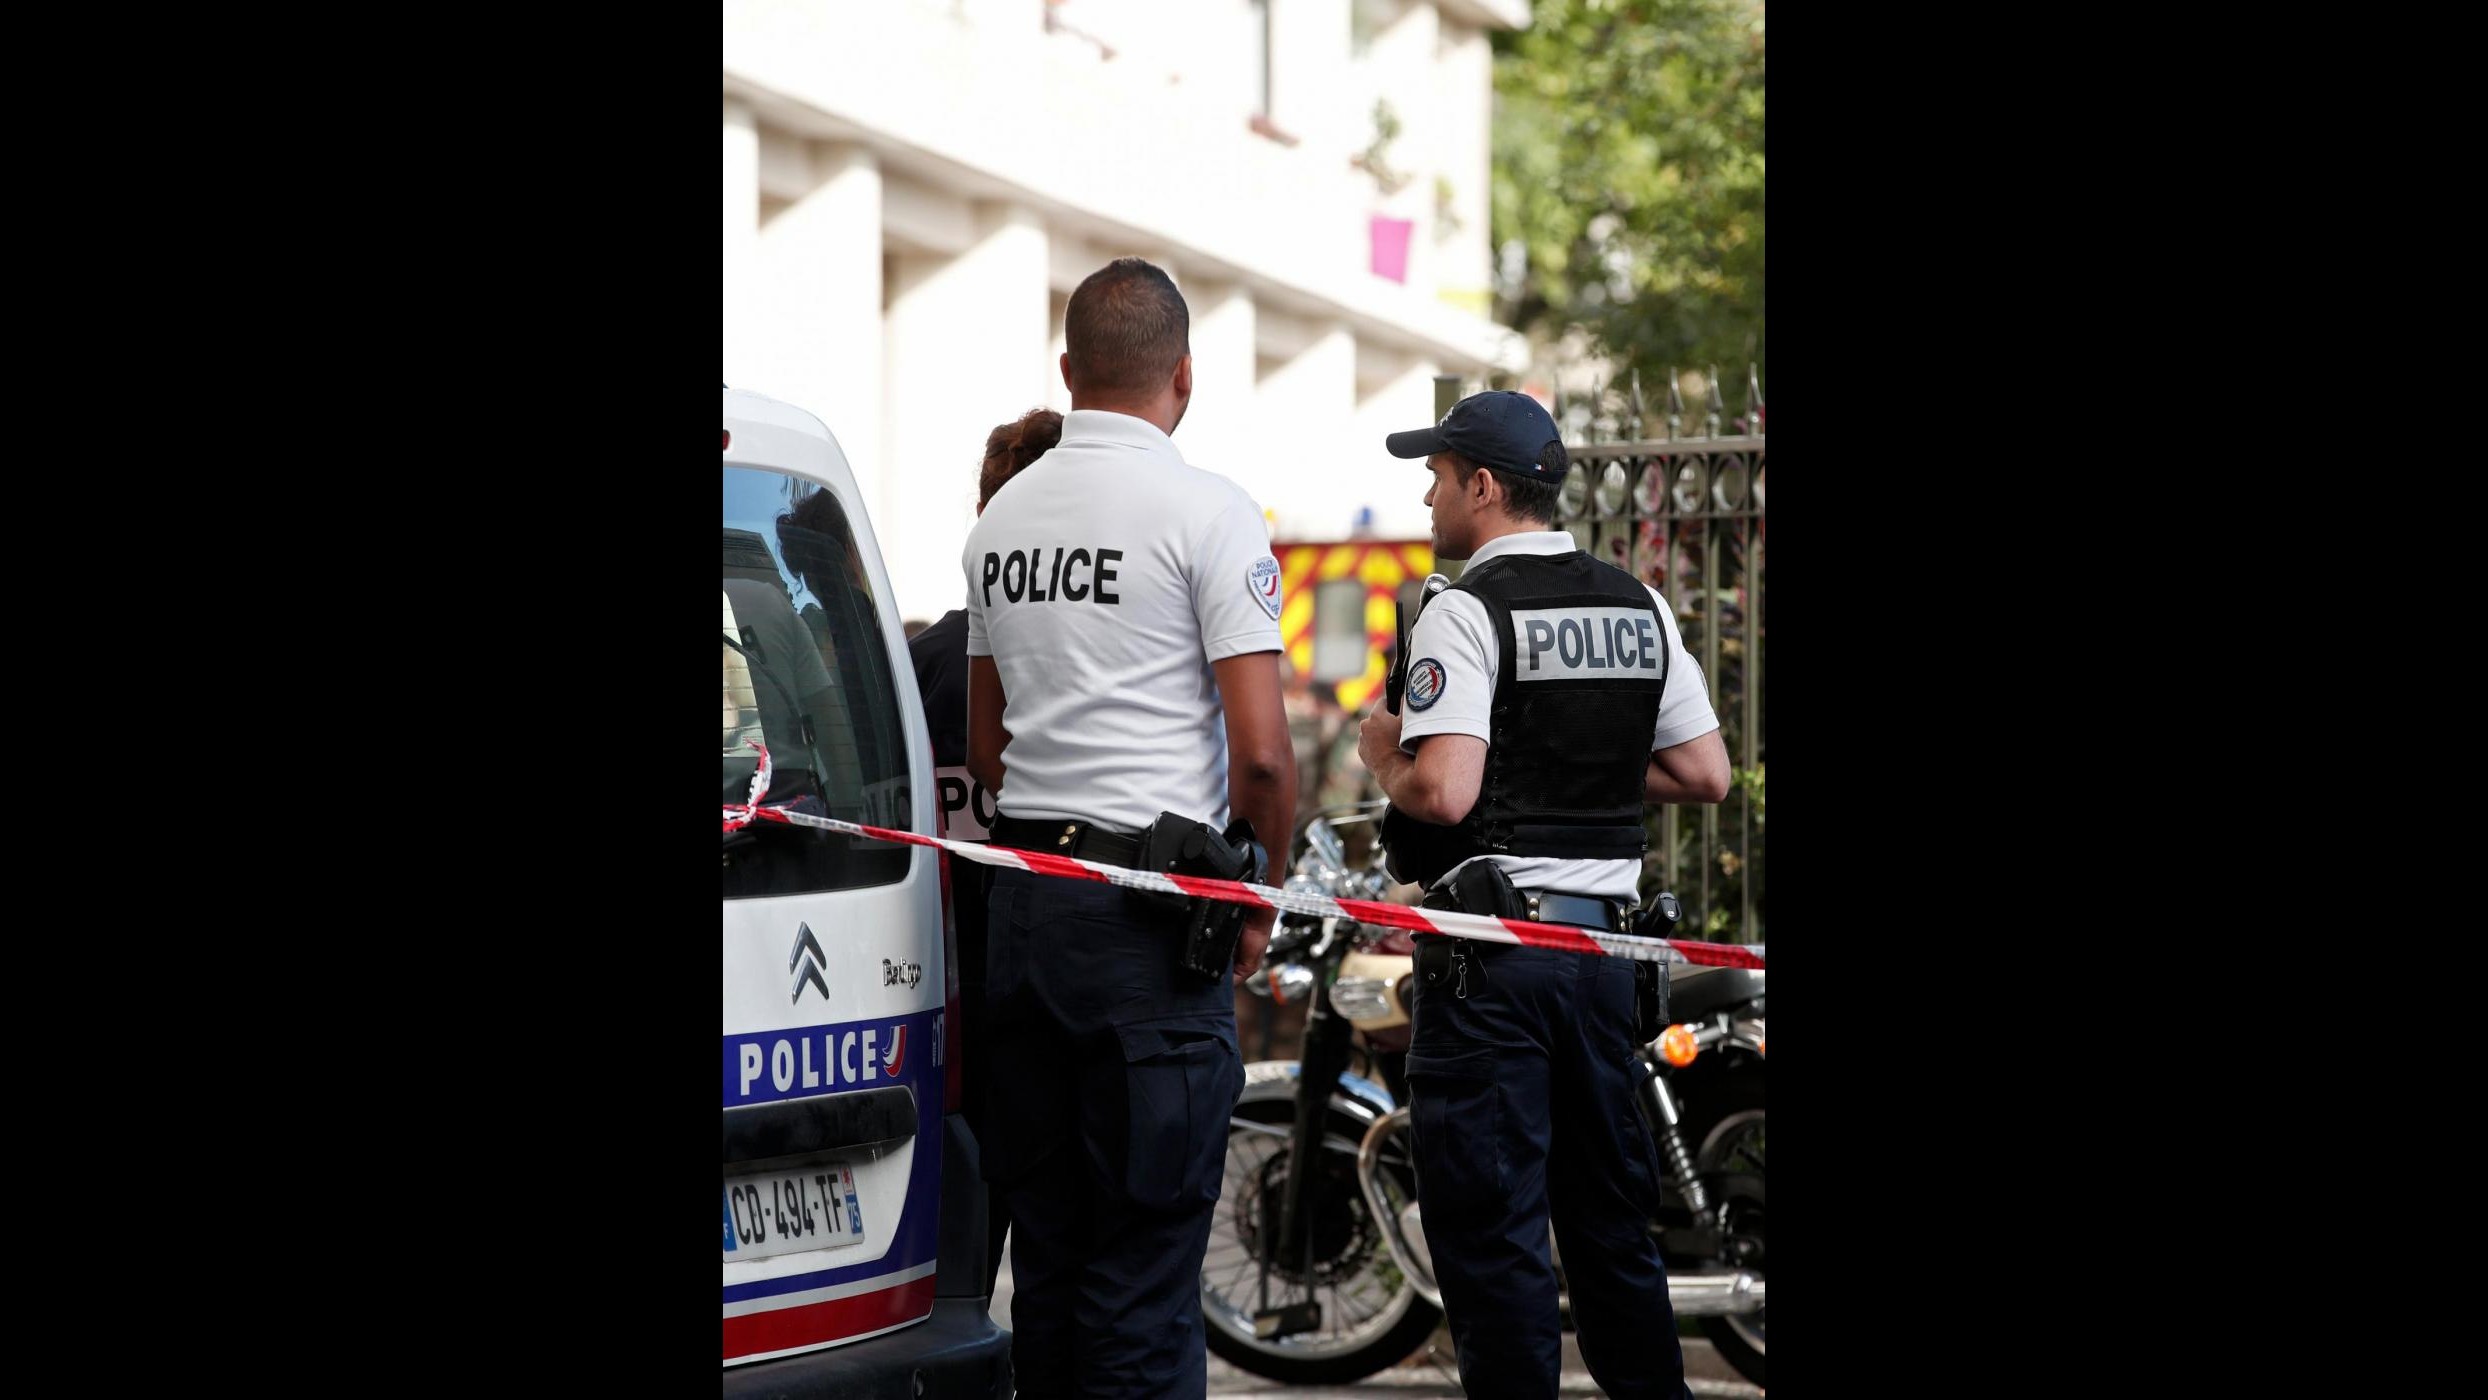 FOTO Parigi, auto travolge militari: si indaga per terrorismo